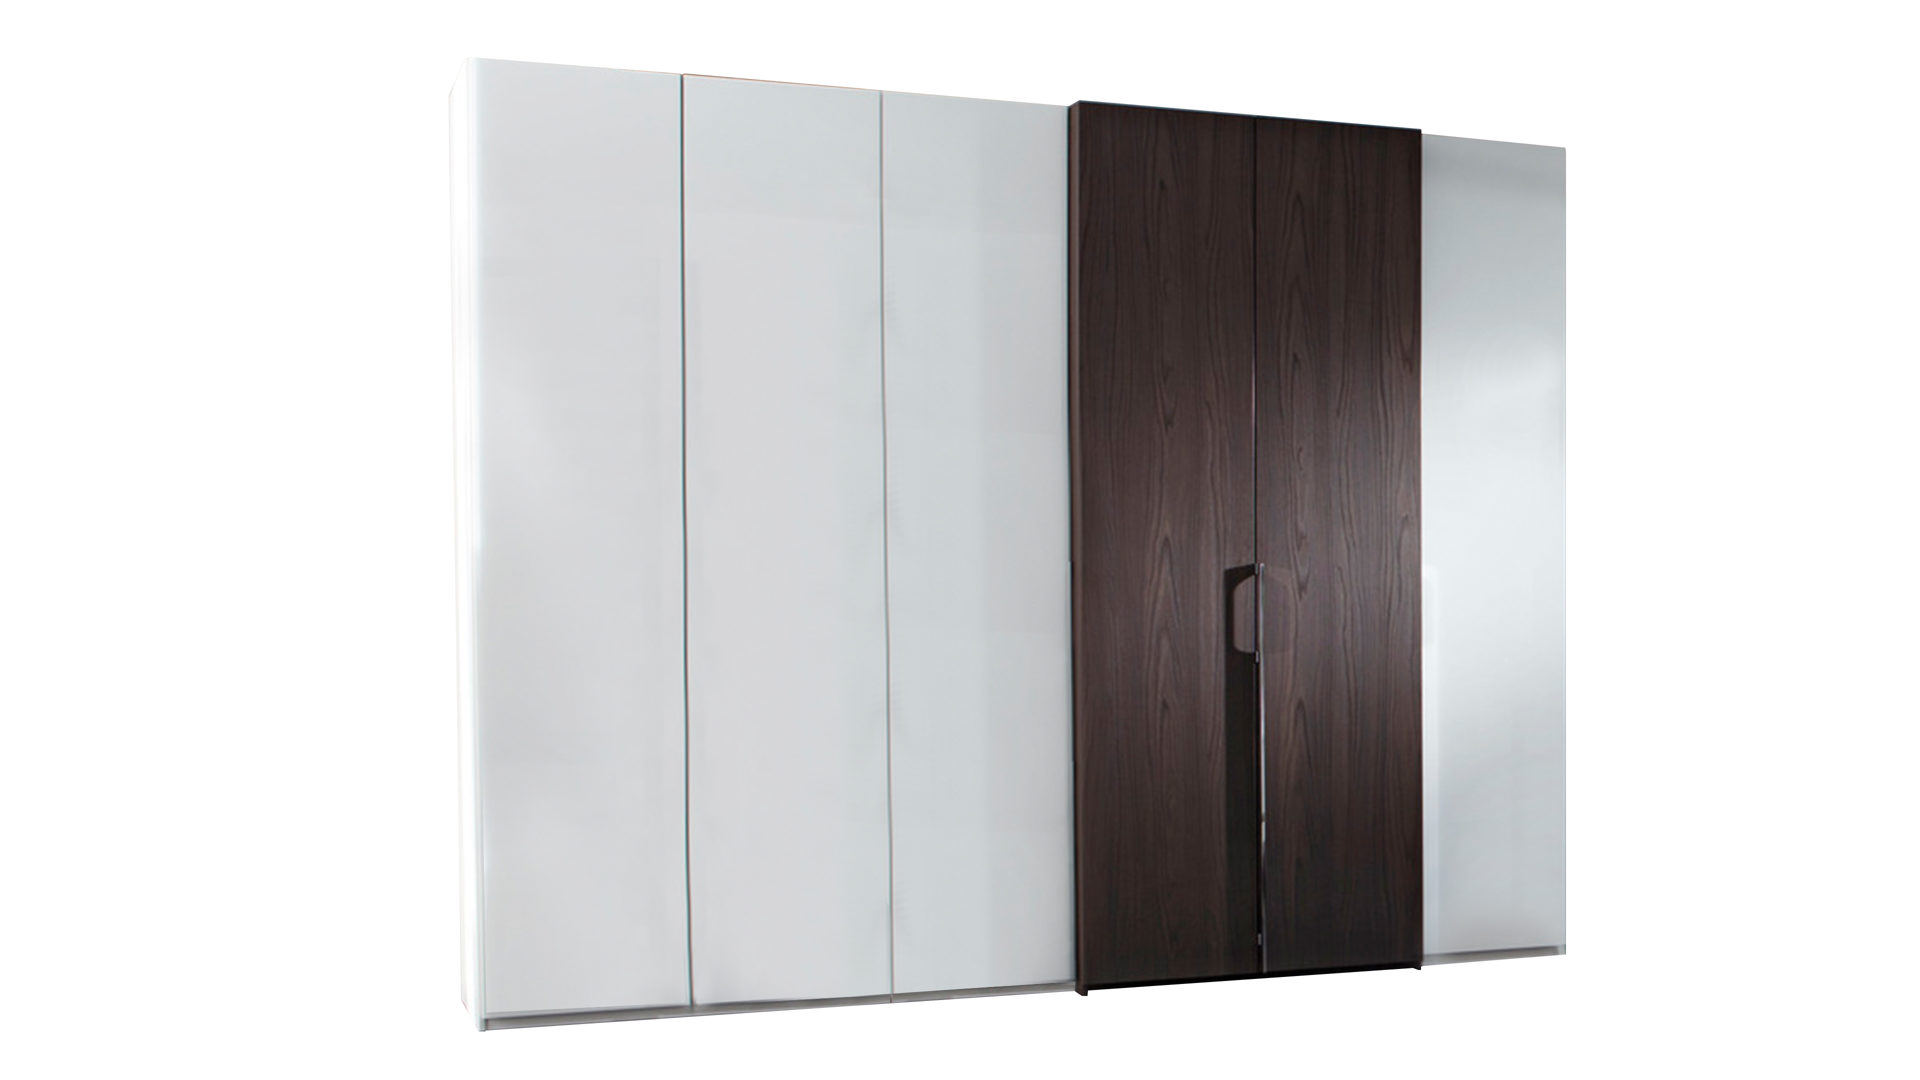 Kleiderschrank Nolte möbel | germersheim aus Holz in Weiß Kleiderschrank concept me weiße & nussbaumfarbene Oberflächen – sechs Türen